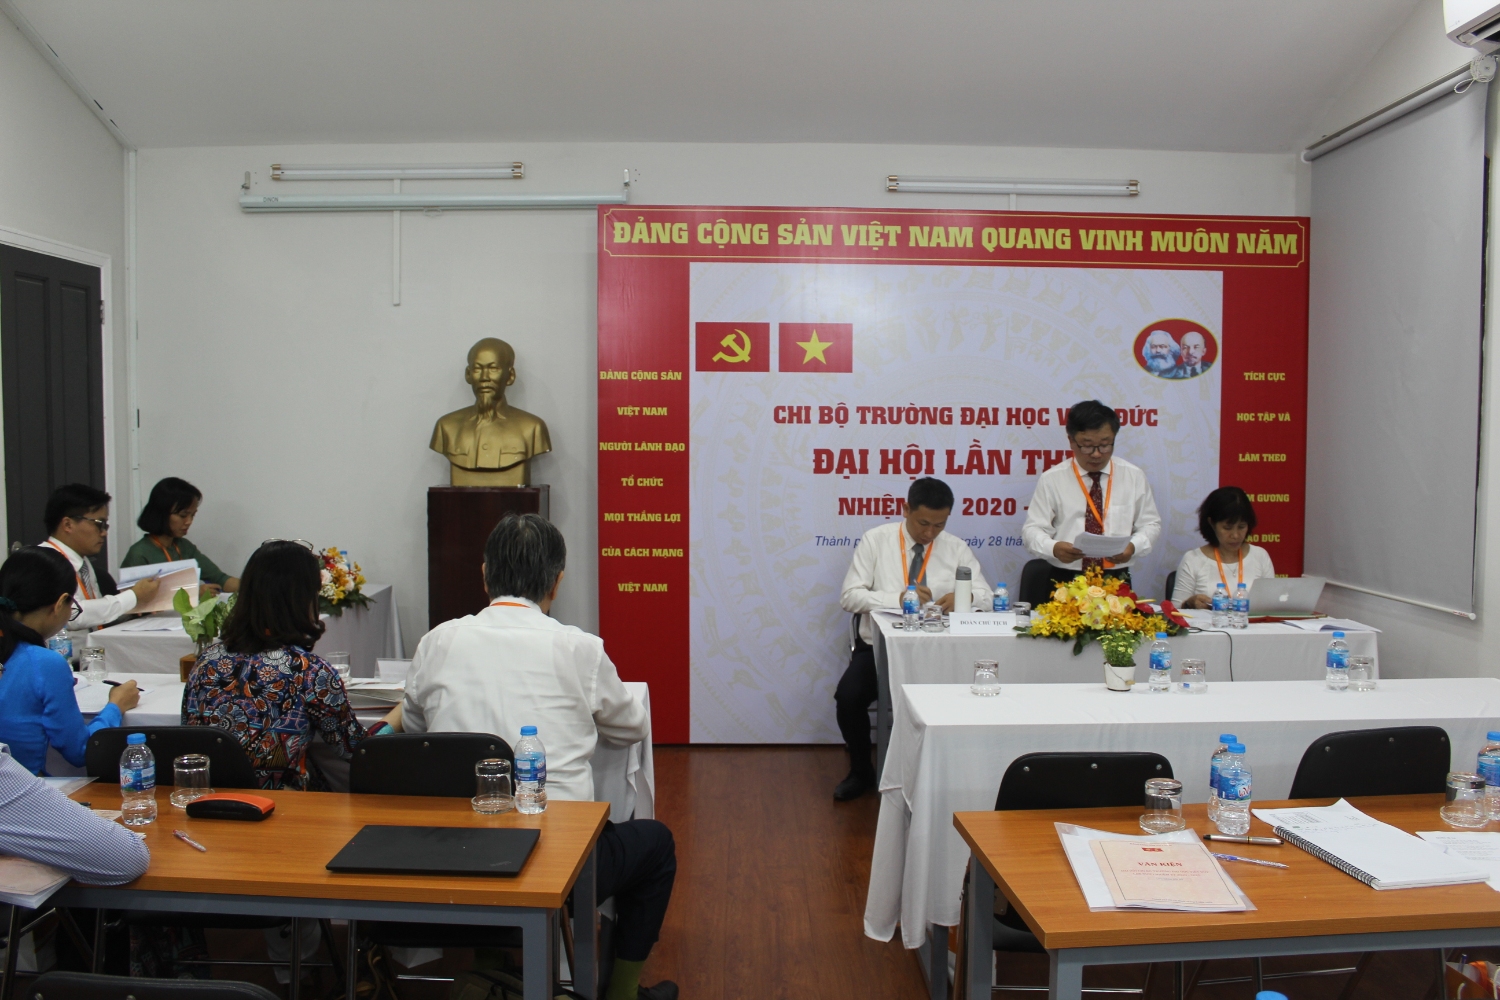 Đồng chí Hà Thúc Viên, thay mặt Đoàn Chủ tịch báo cáo tổng kết thực hiện nghị quyết chi bộ nhiệm kỳ 2015 – 2020 và phương hướng, mục tiêu, nhiệm vụ, giải pháp của nhiệm kỳ 2020 – 2025